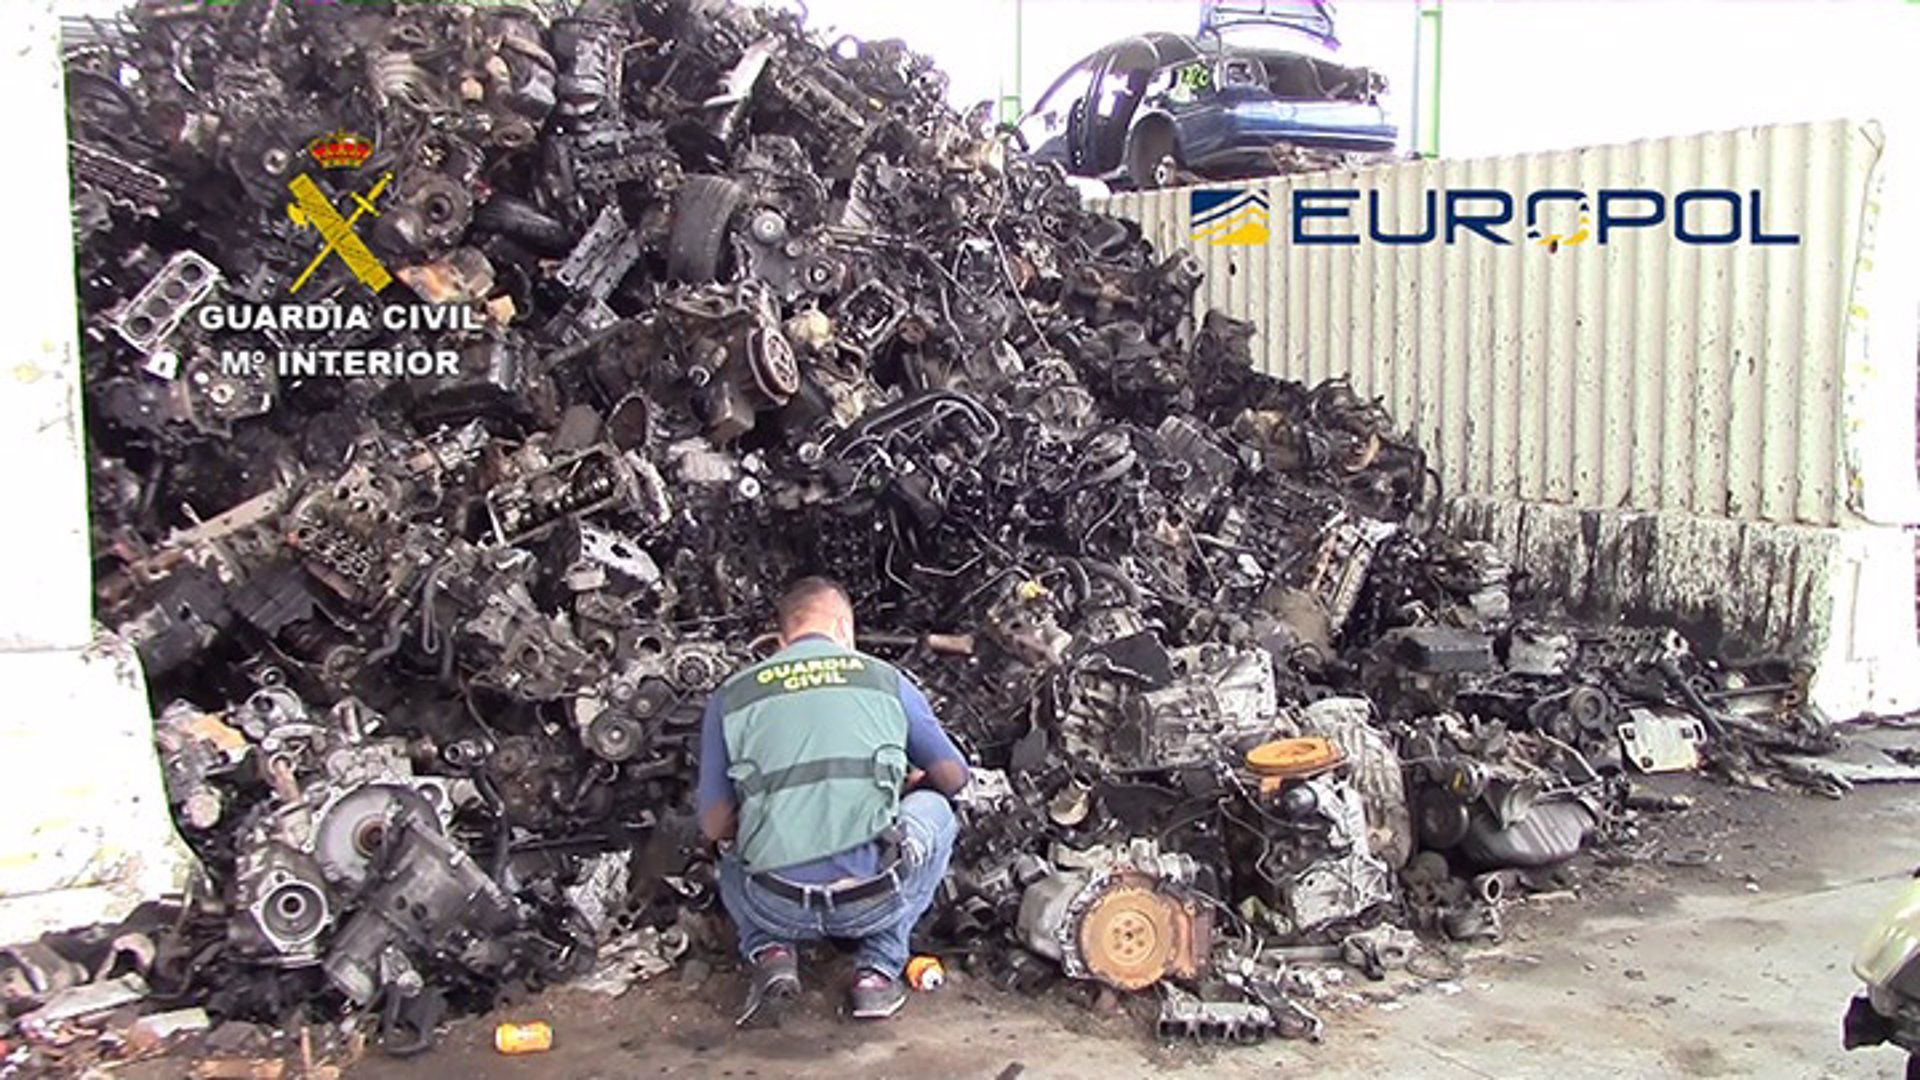 La Guardia Civil desarticula varios grupos dedicados a la exportación ilegal de residuos peligrosos / Foto: EP